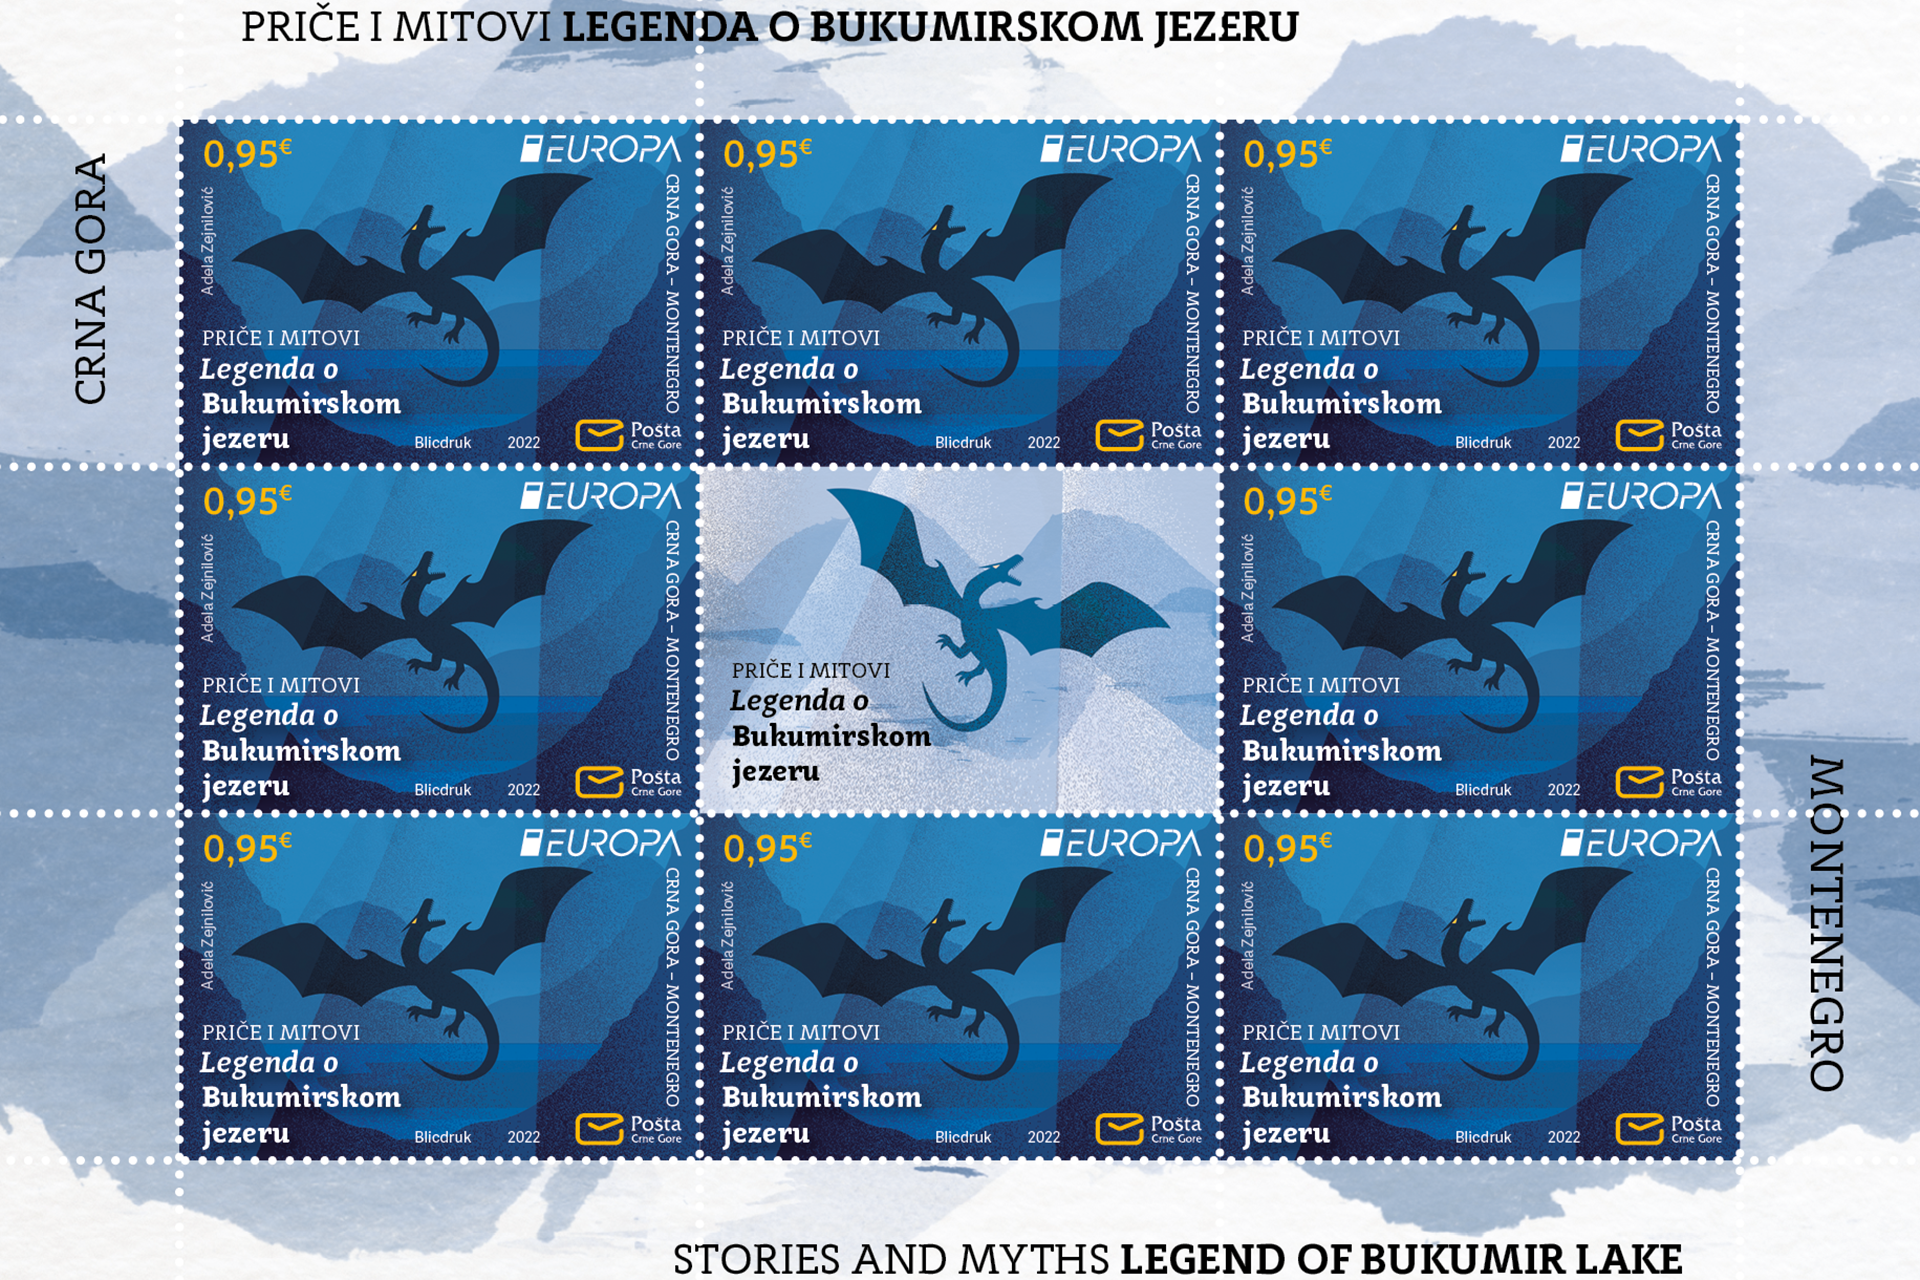 Publikovano prigodno izdanje “EVROPA Priče i mitovi - Legenda o Bukumirskom jezeru”